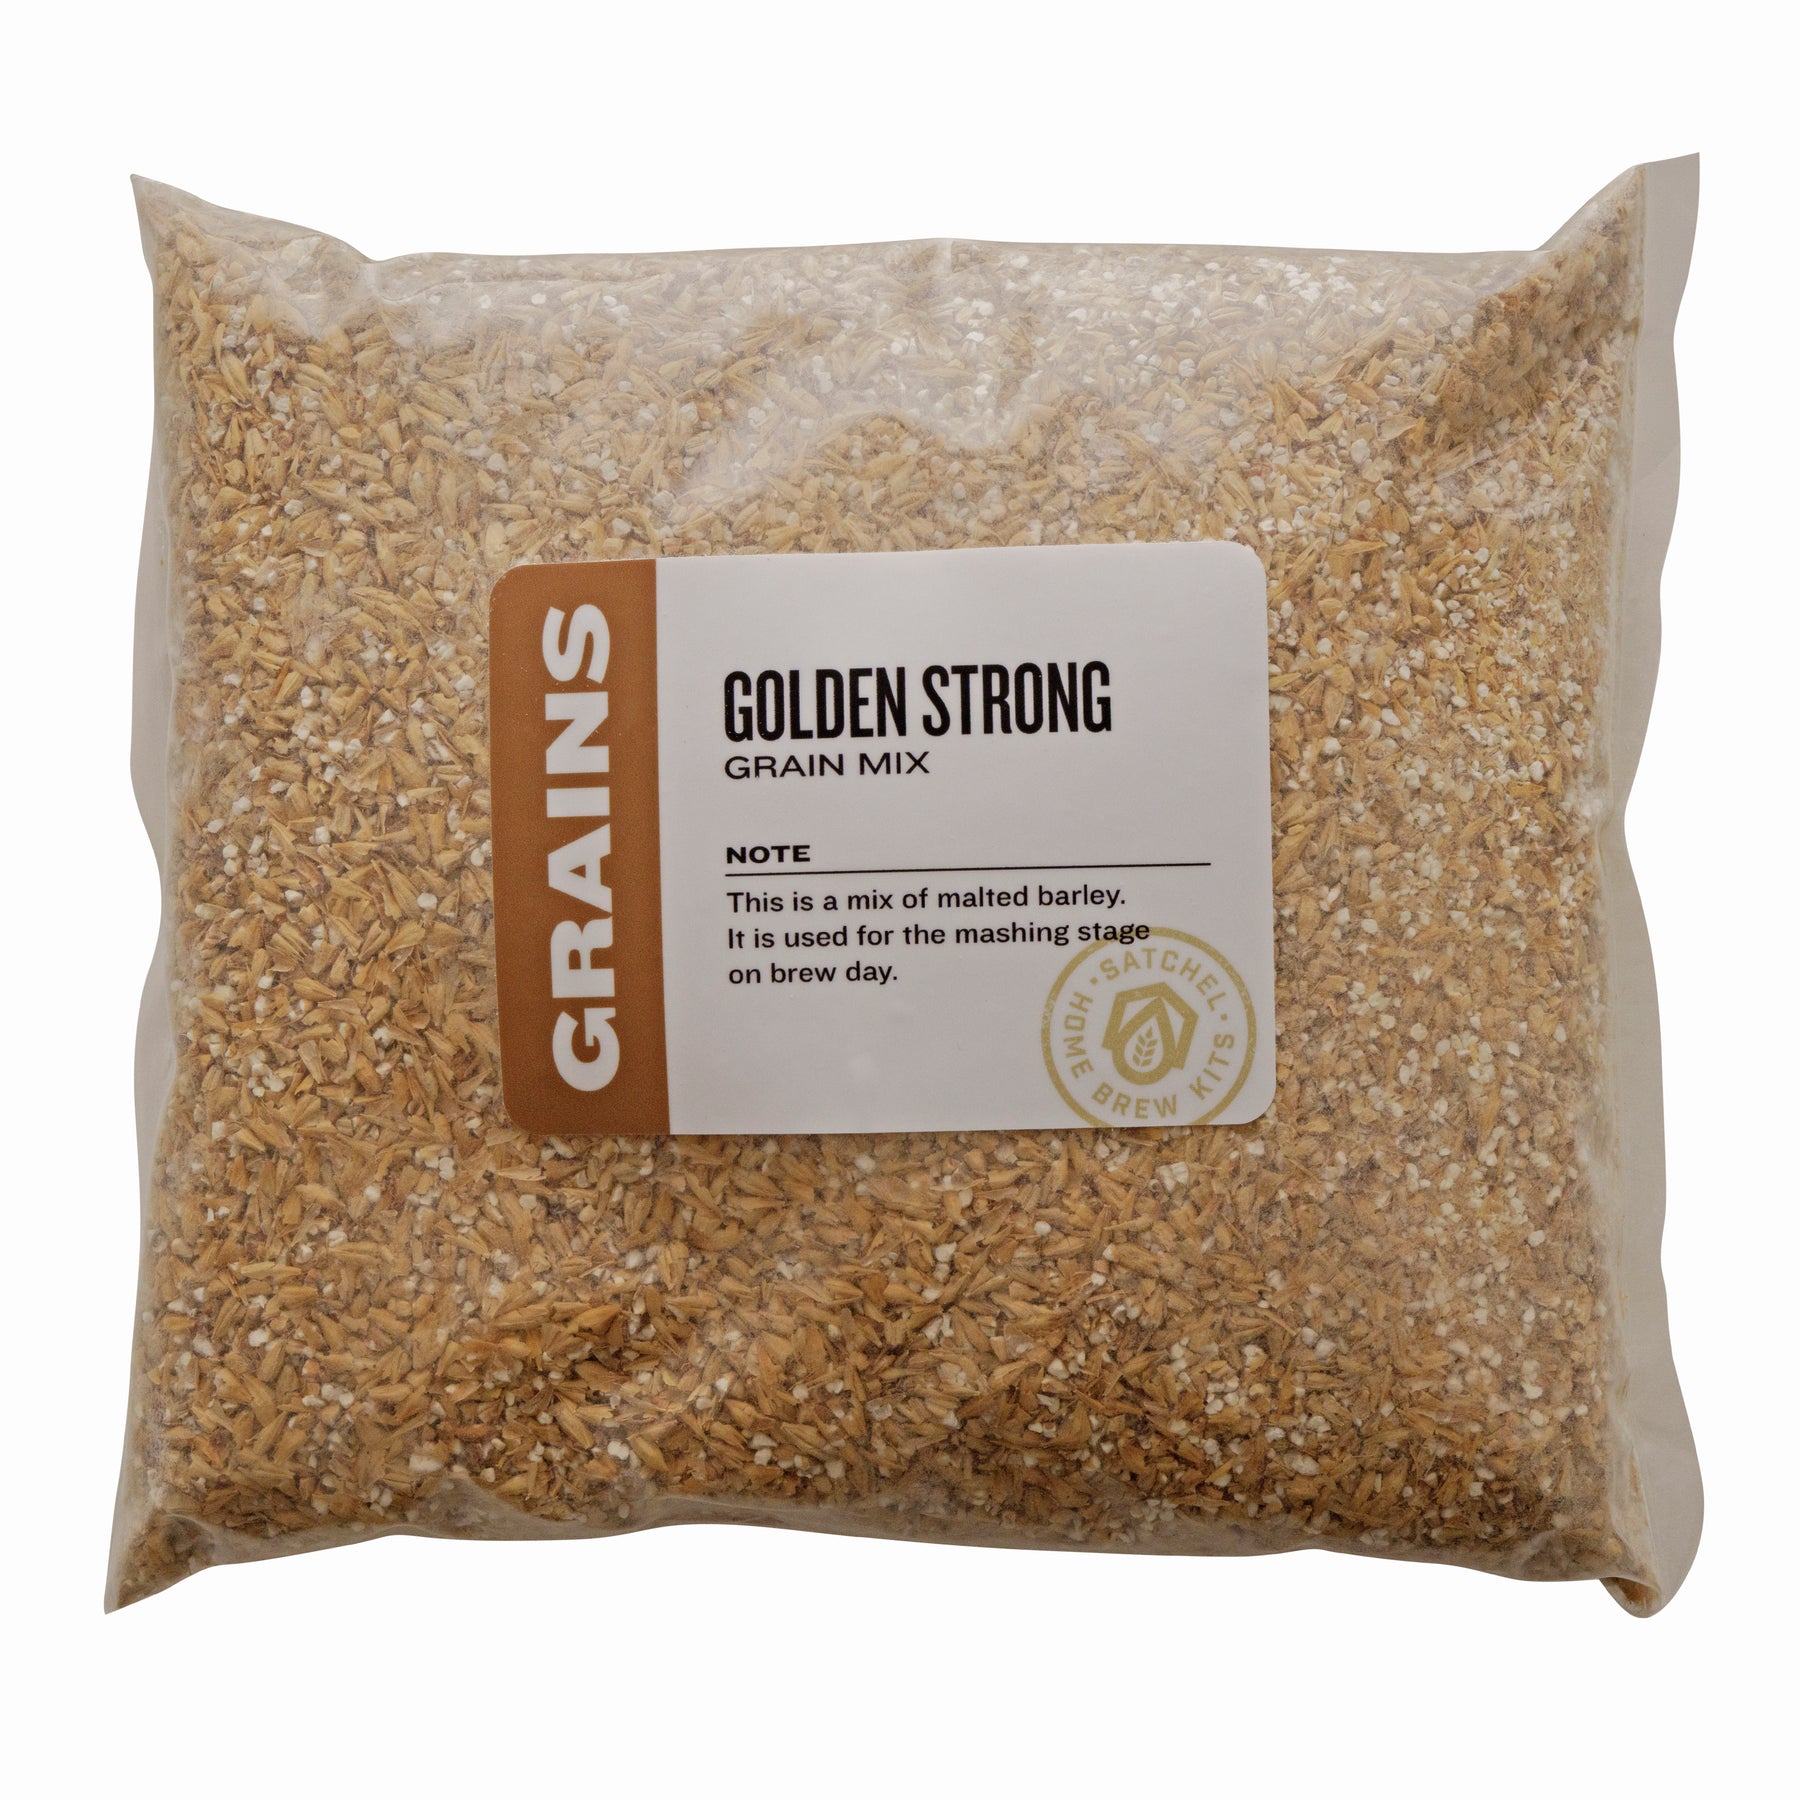 Belgian Golden Strong Recipe Mix - All Grain